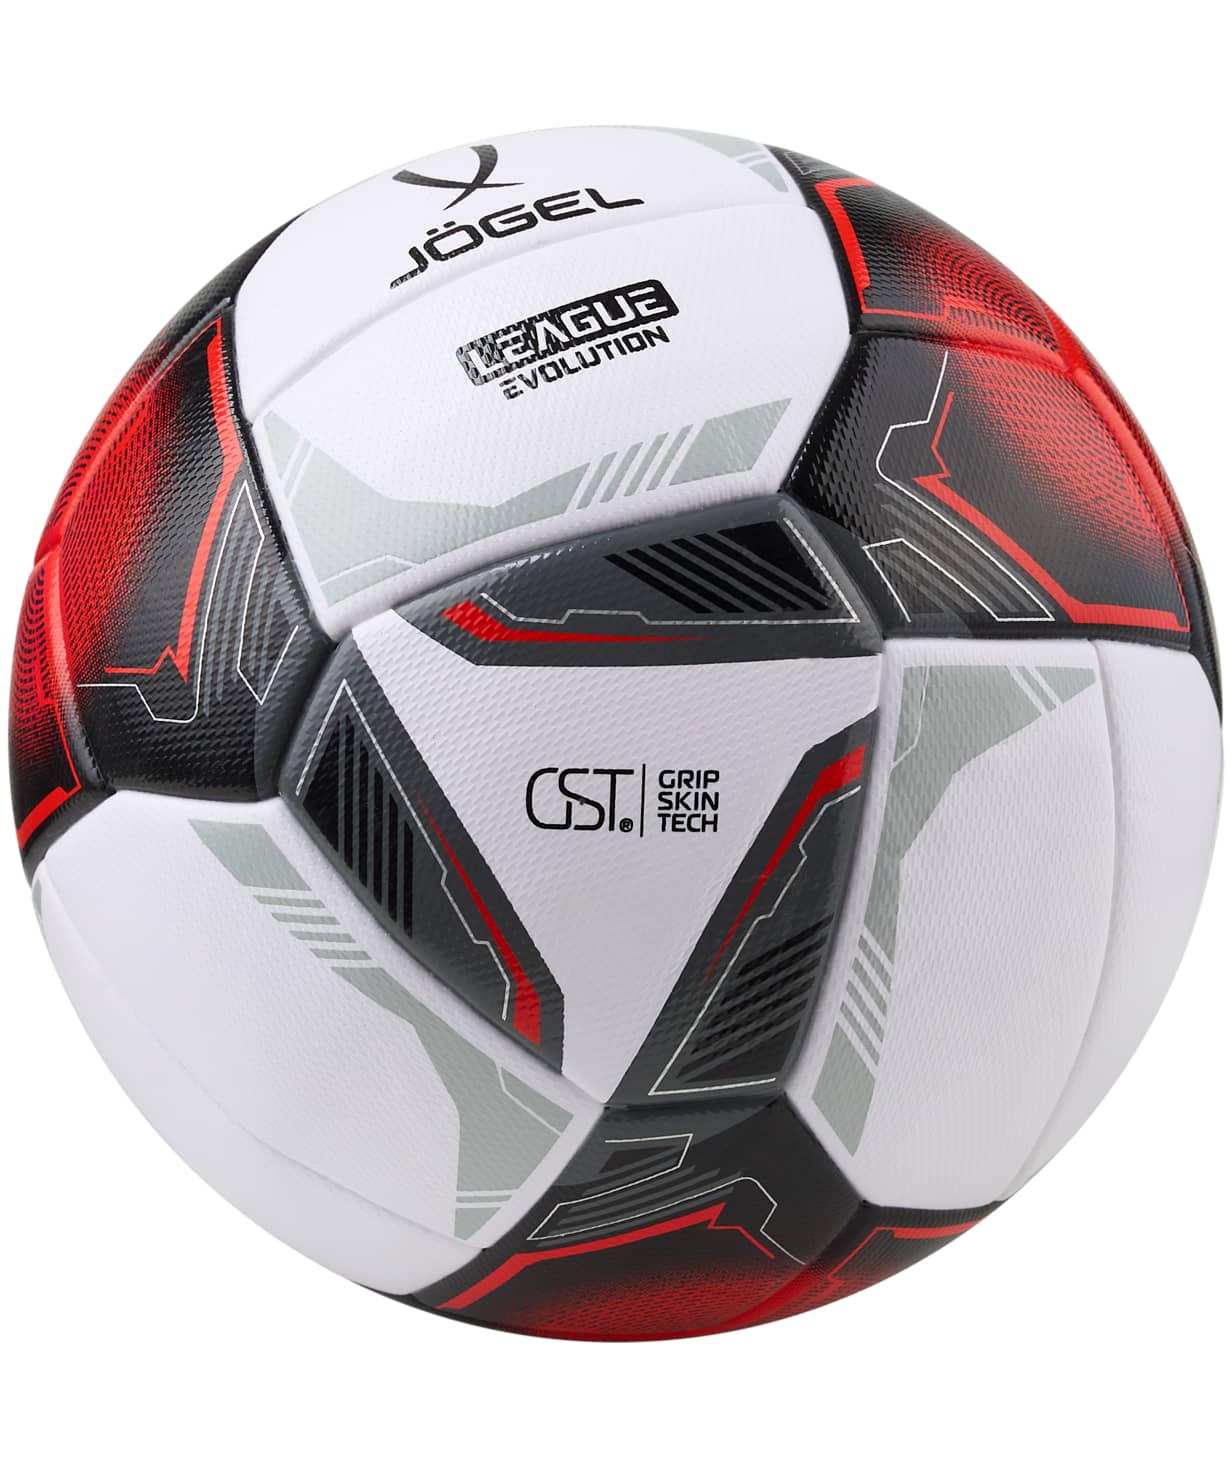 Мяч футбольный Jogel League Evolution Pro, №5, белый 1230_1479